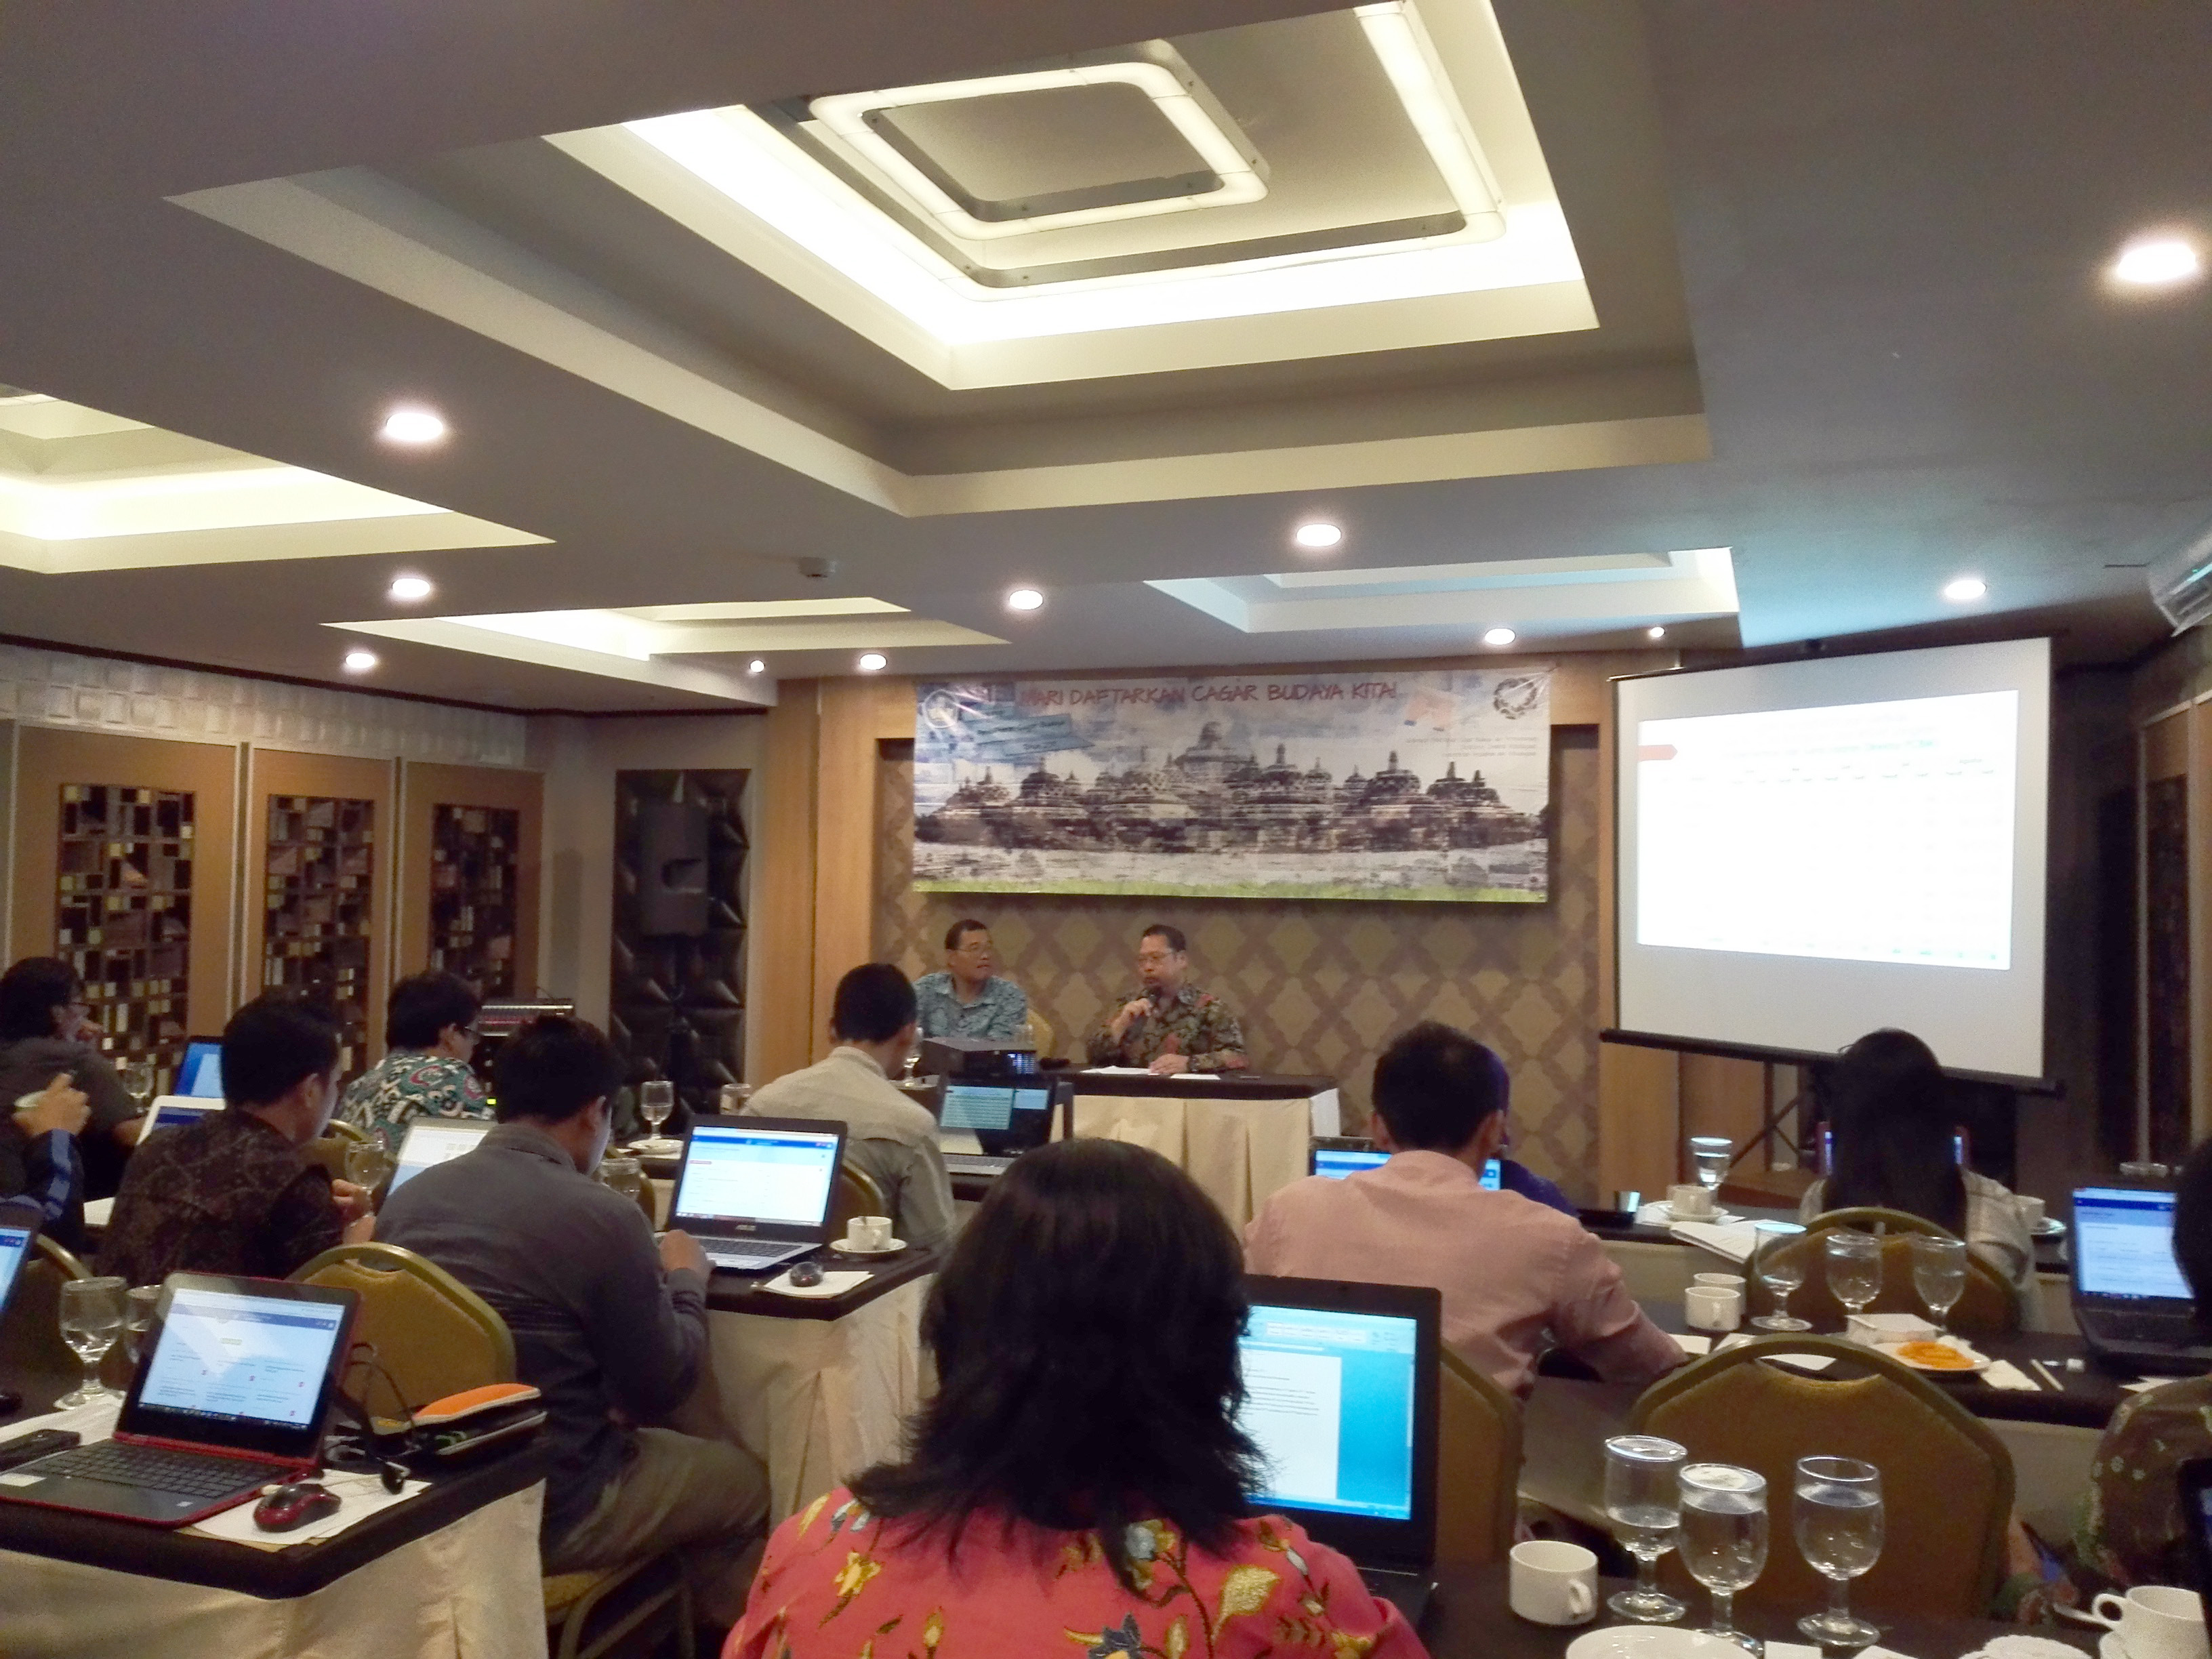 You are currently viewing “Workshop Pendaftaran Cagar Budaya Online di Kota Semarang”